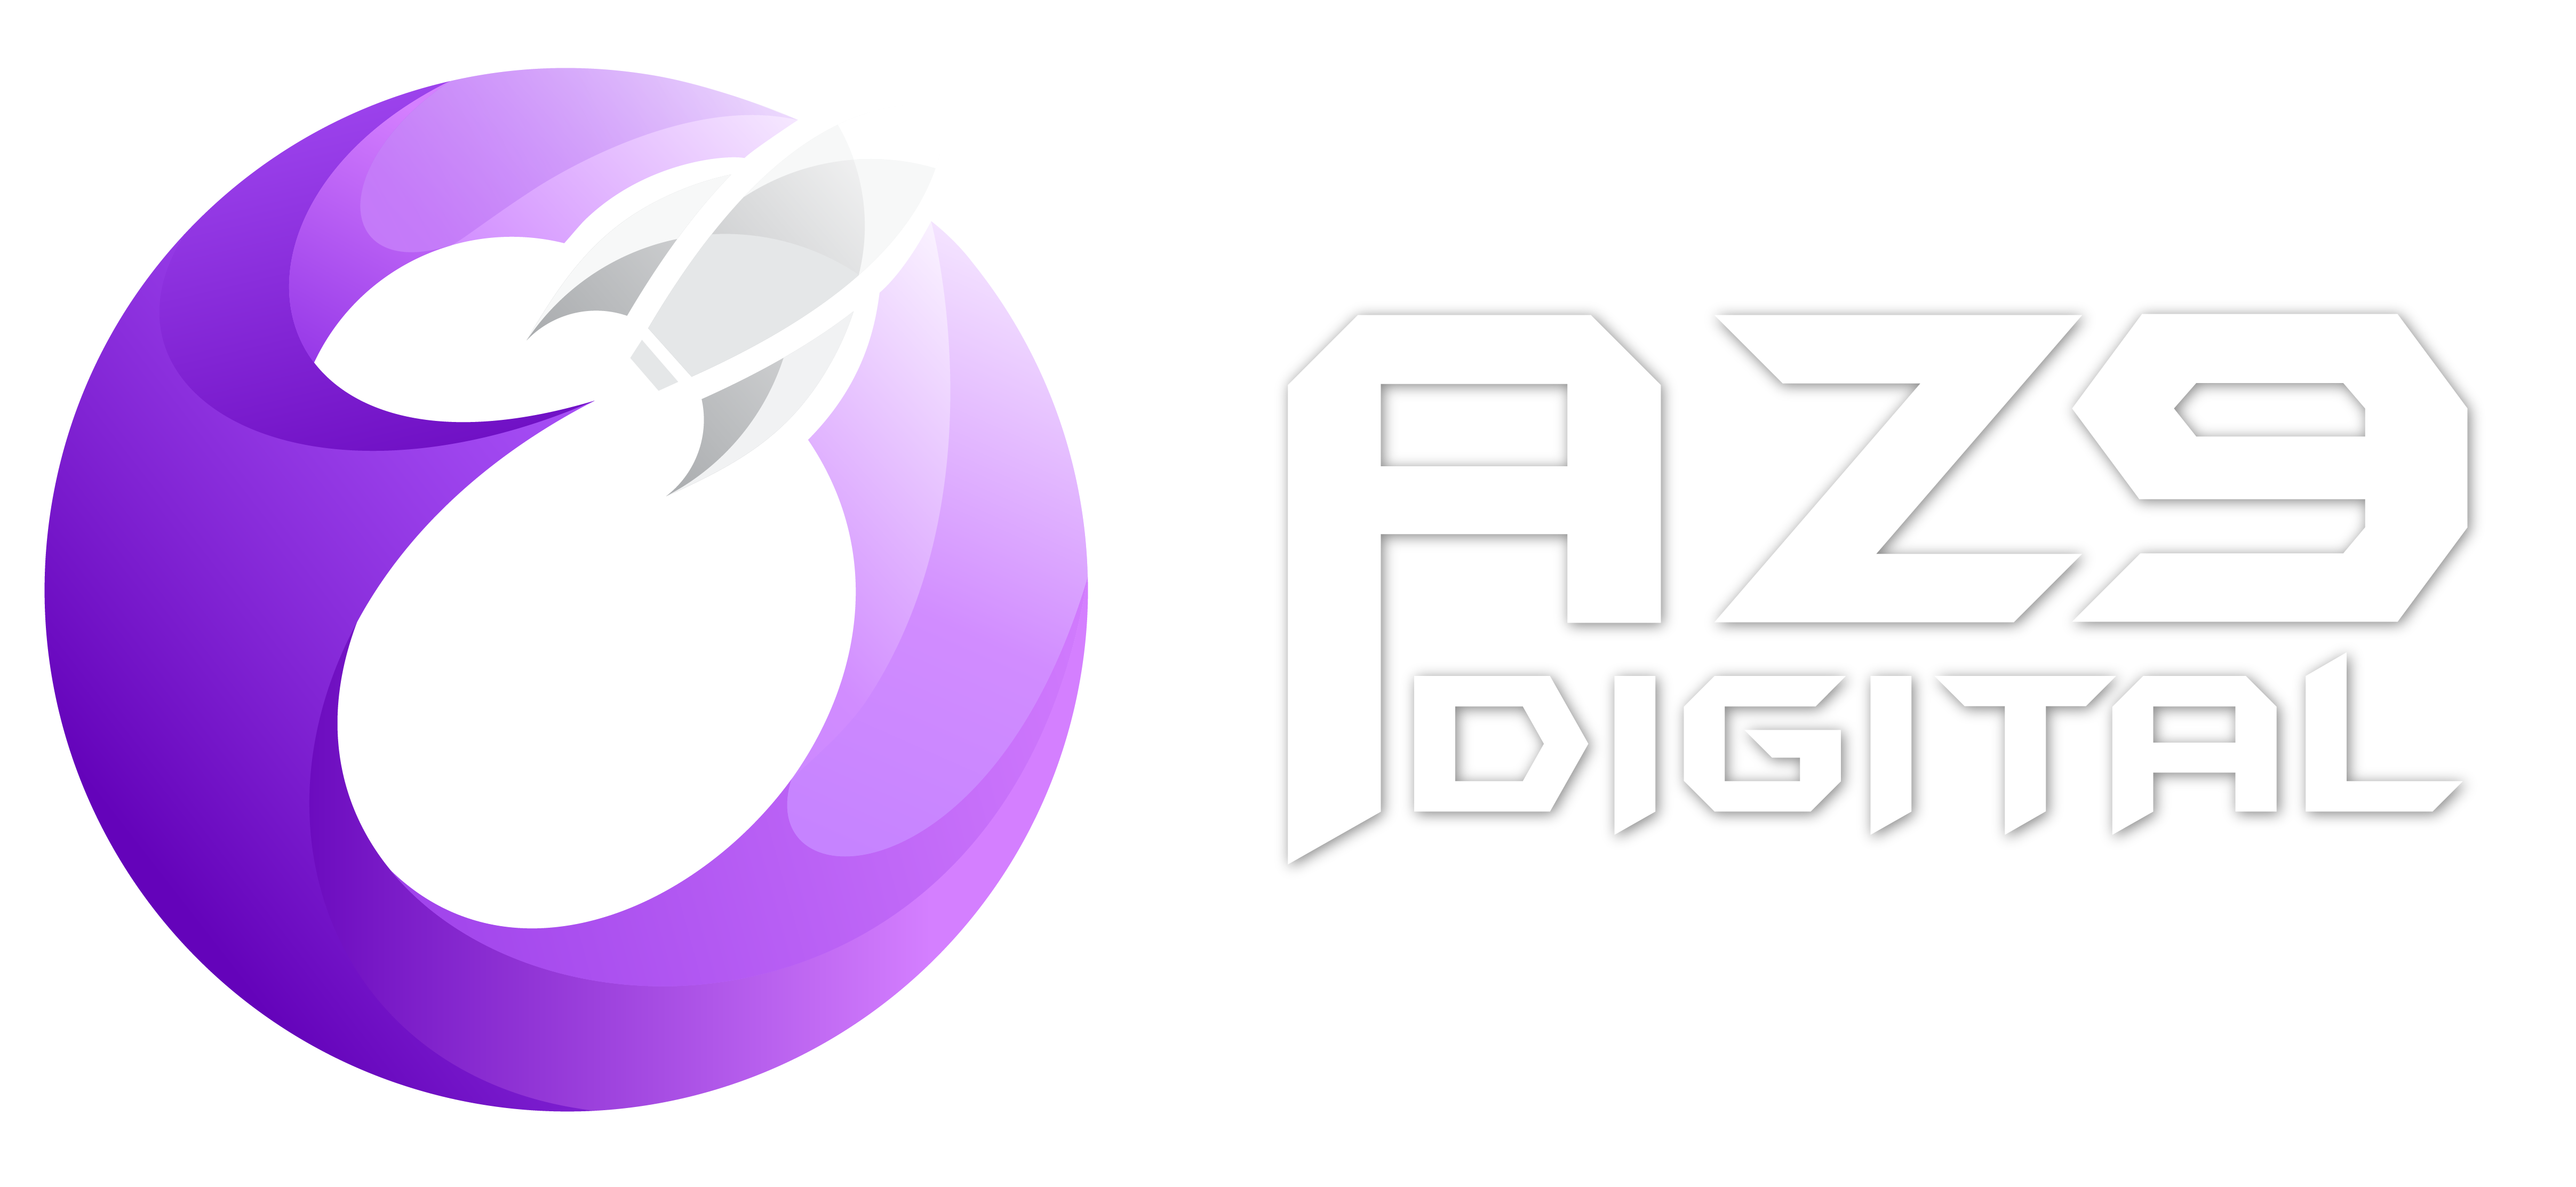 AZ9 Digital